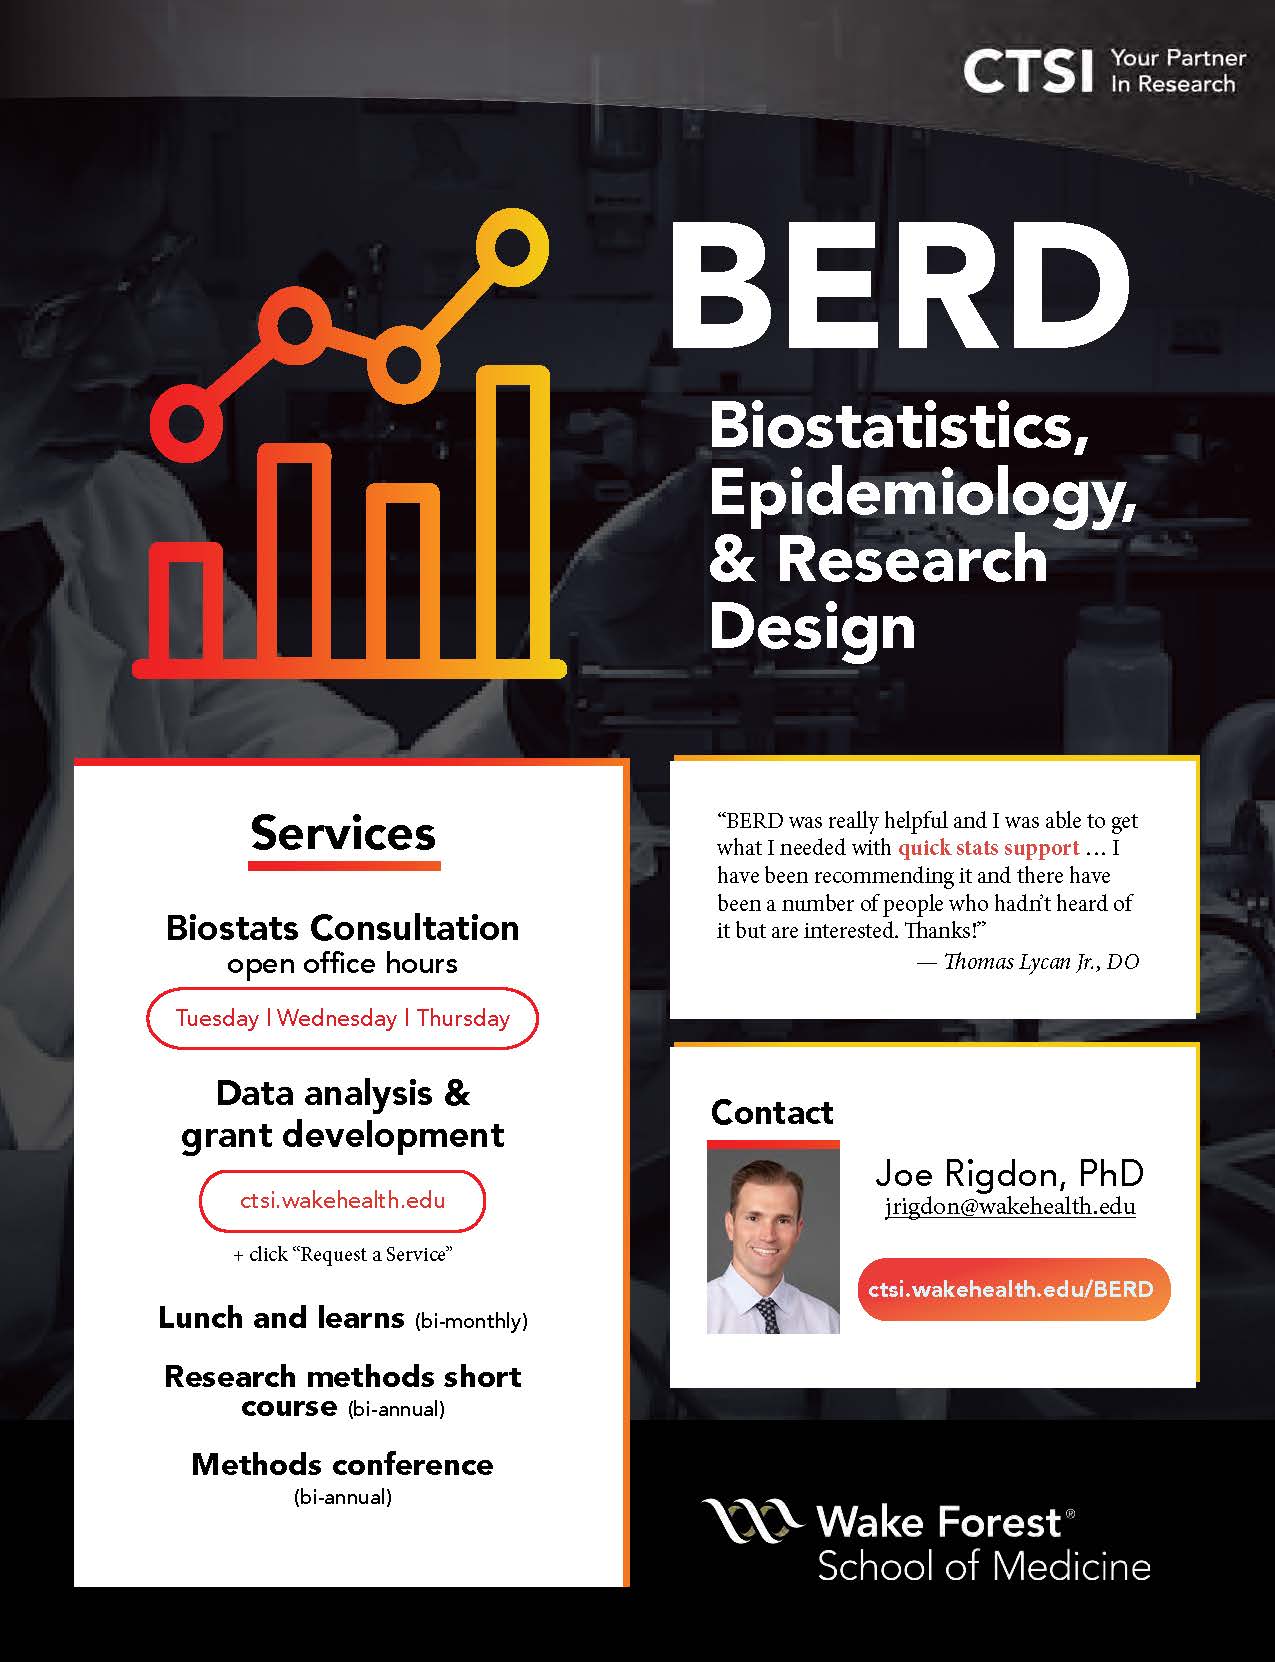 BERD | Biostatistics, Epidemiology, & Research Design